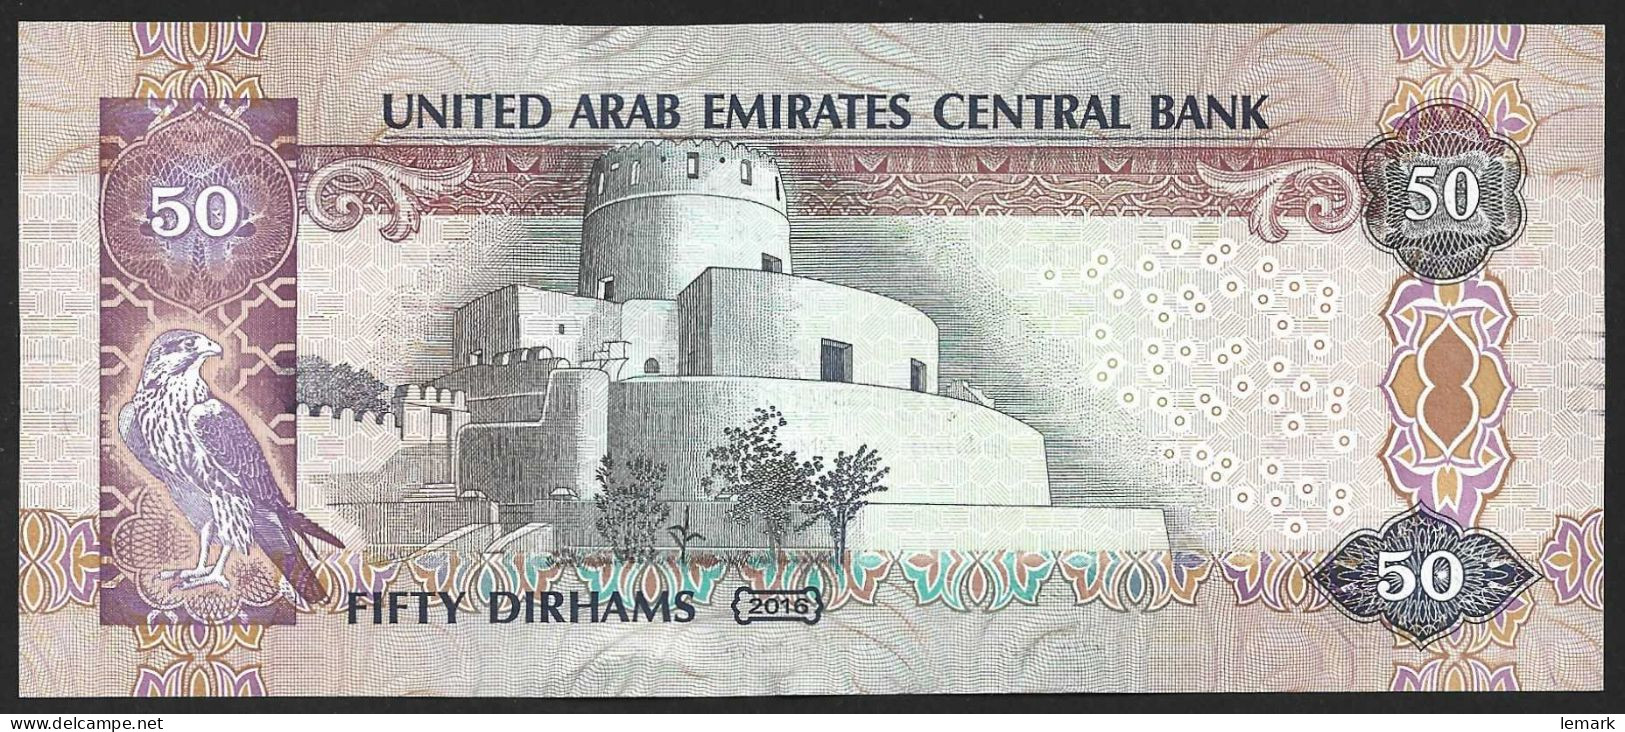 United Arab Emirates 50 Dirhams 2016 P29f AUNC - Ver. Arab. Emirate